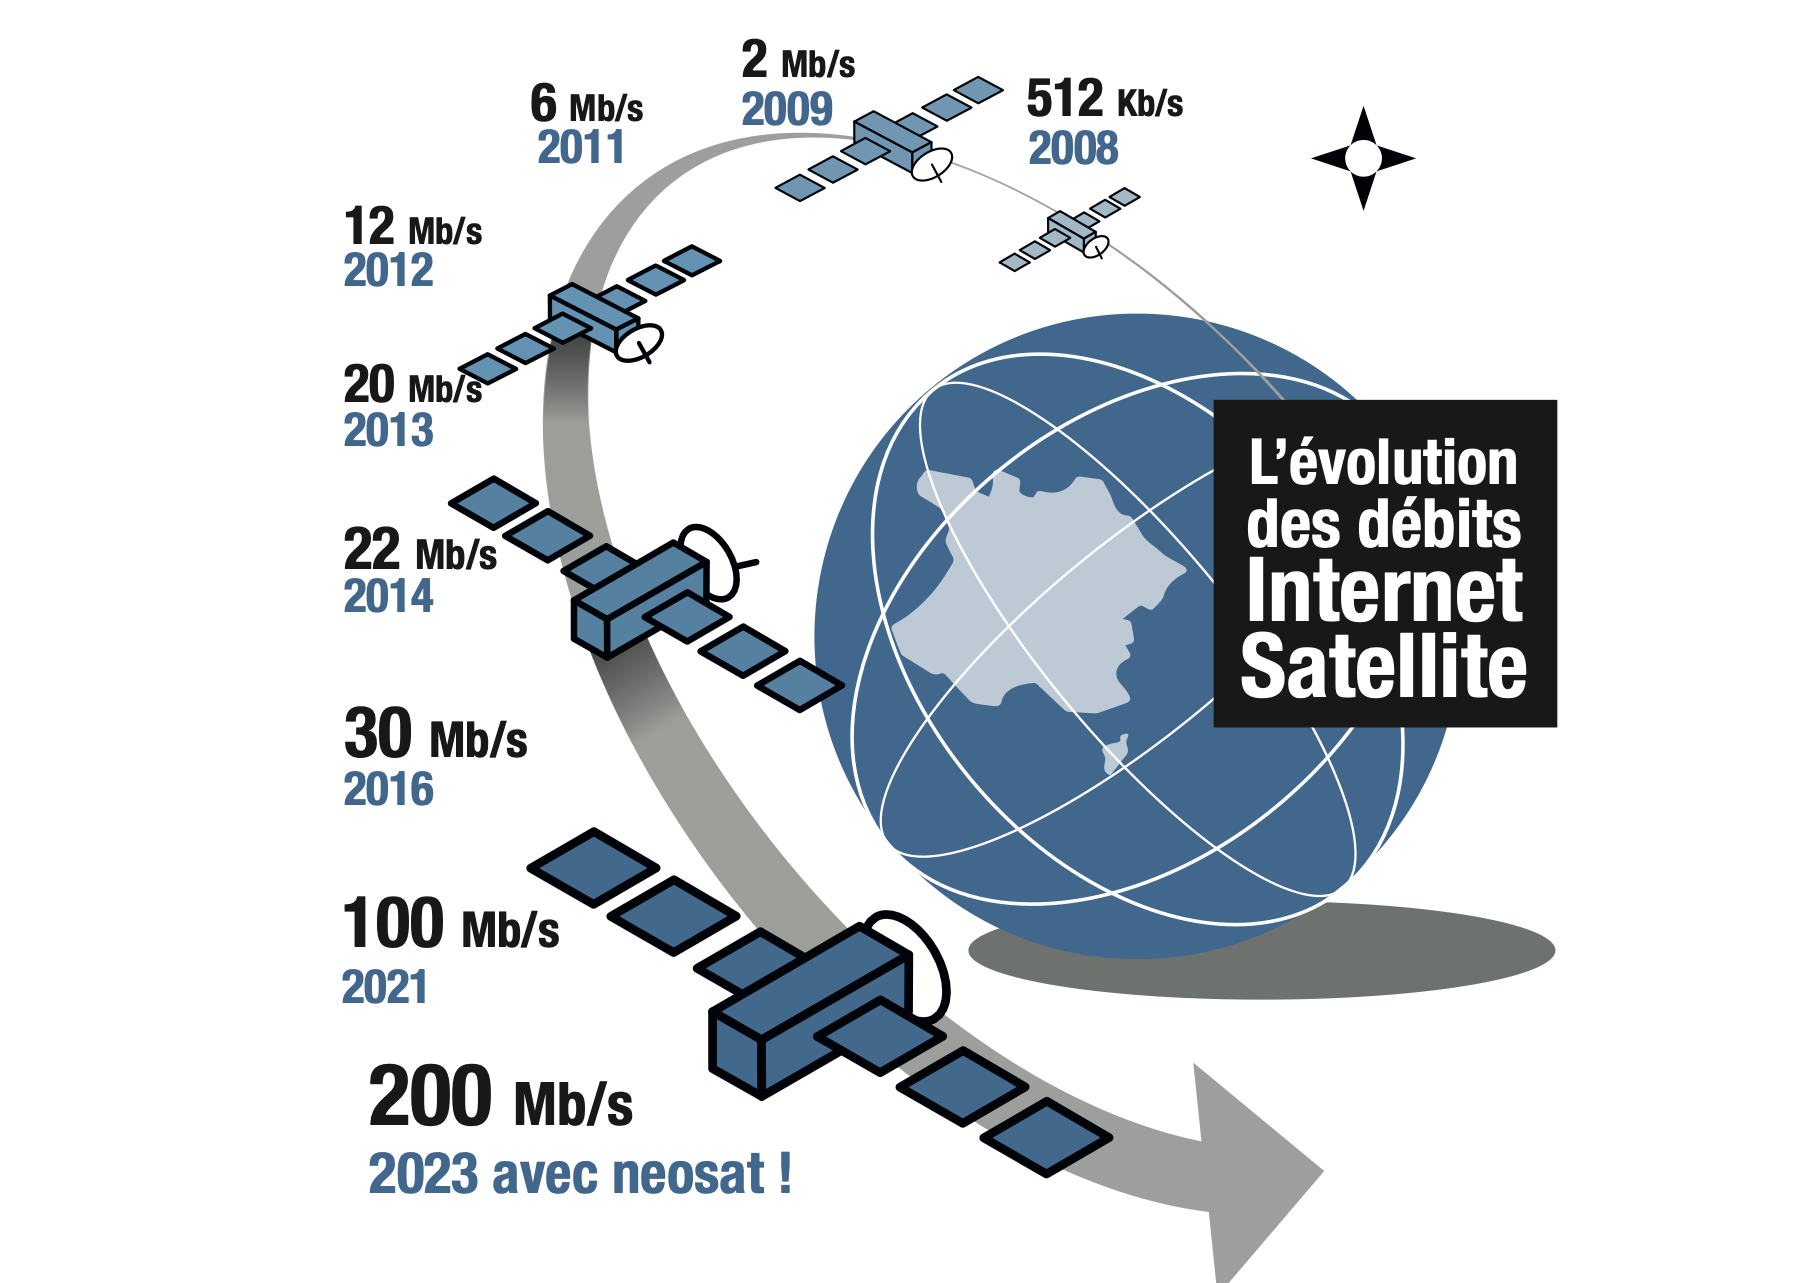 Entreprises à taille humaine, comprenez l'évolution de la technologie Internet par satellite au travers des débits